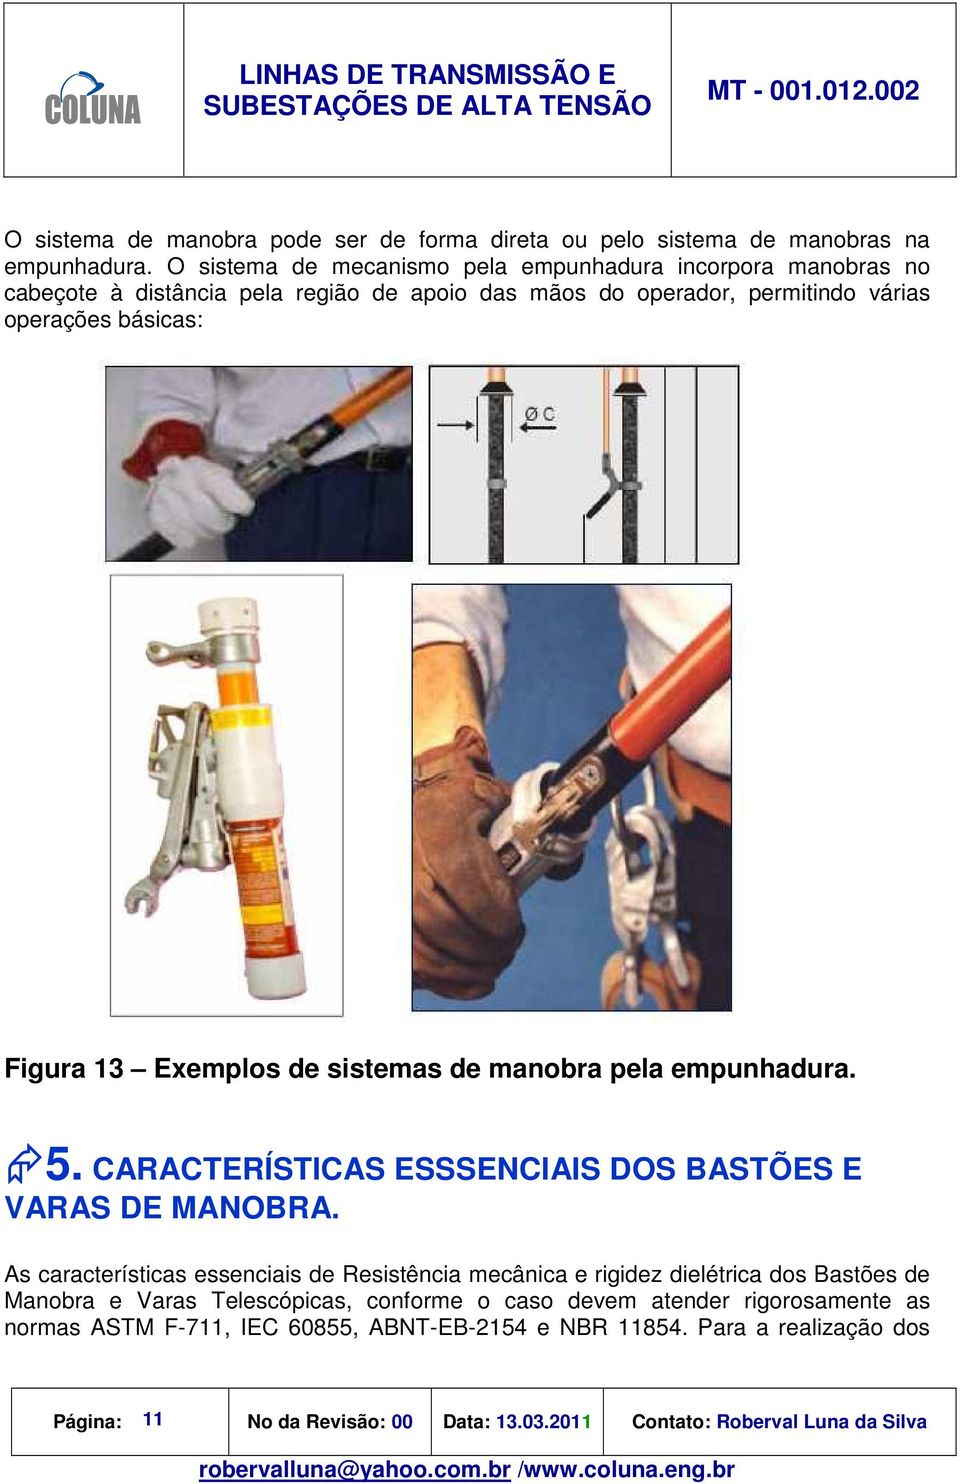 Exemplos de sistemas de manobra pela empunhadura. 5. CARACTERÍSTICAS ESSSENCIAIS DOS BASTÕES E VARAS DE MANOBRA.